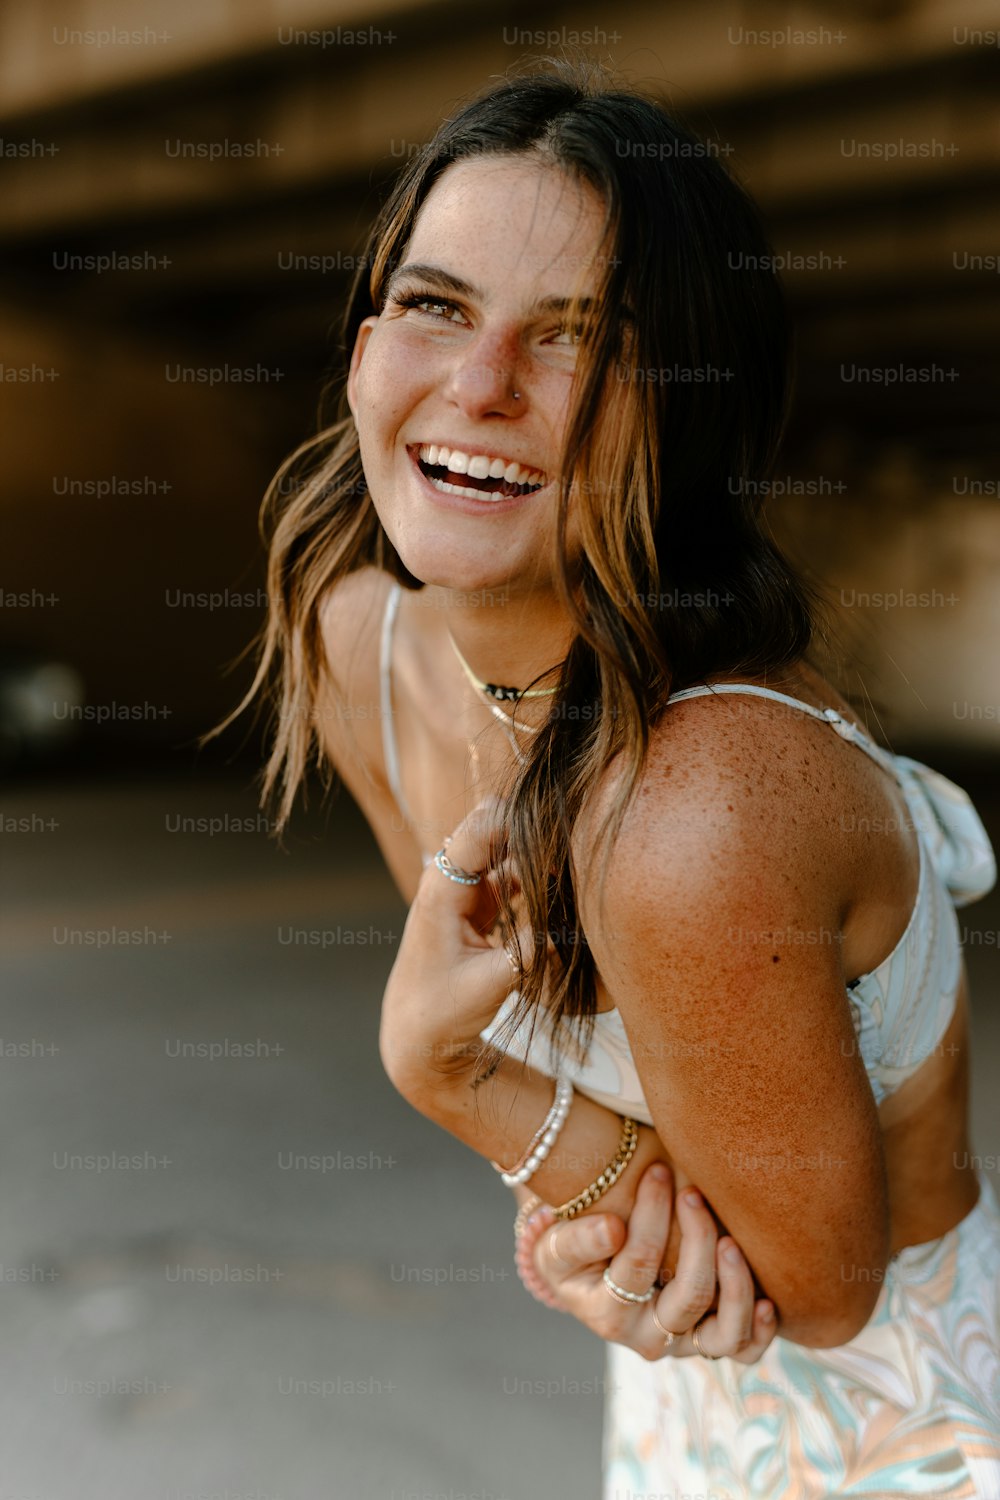 Una donna in un vestito bianco sta sorridendo